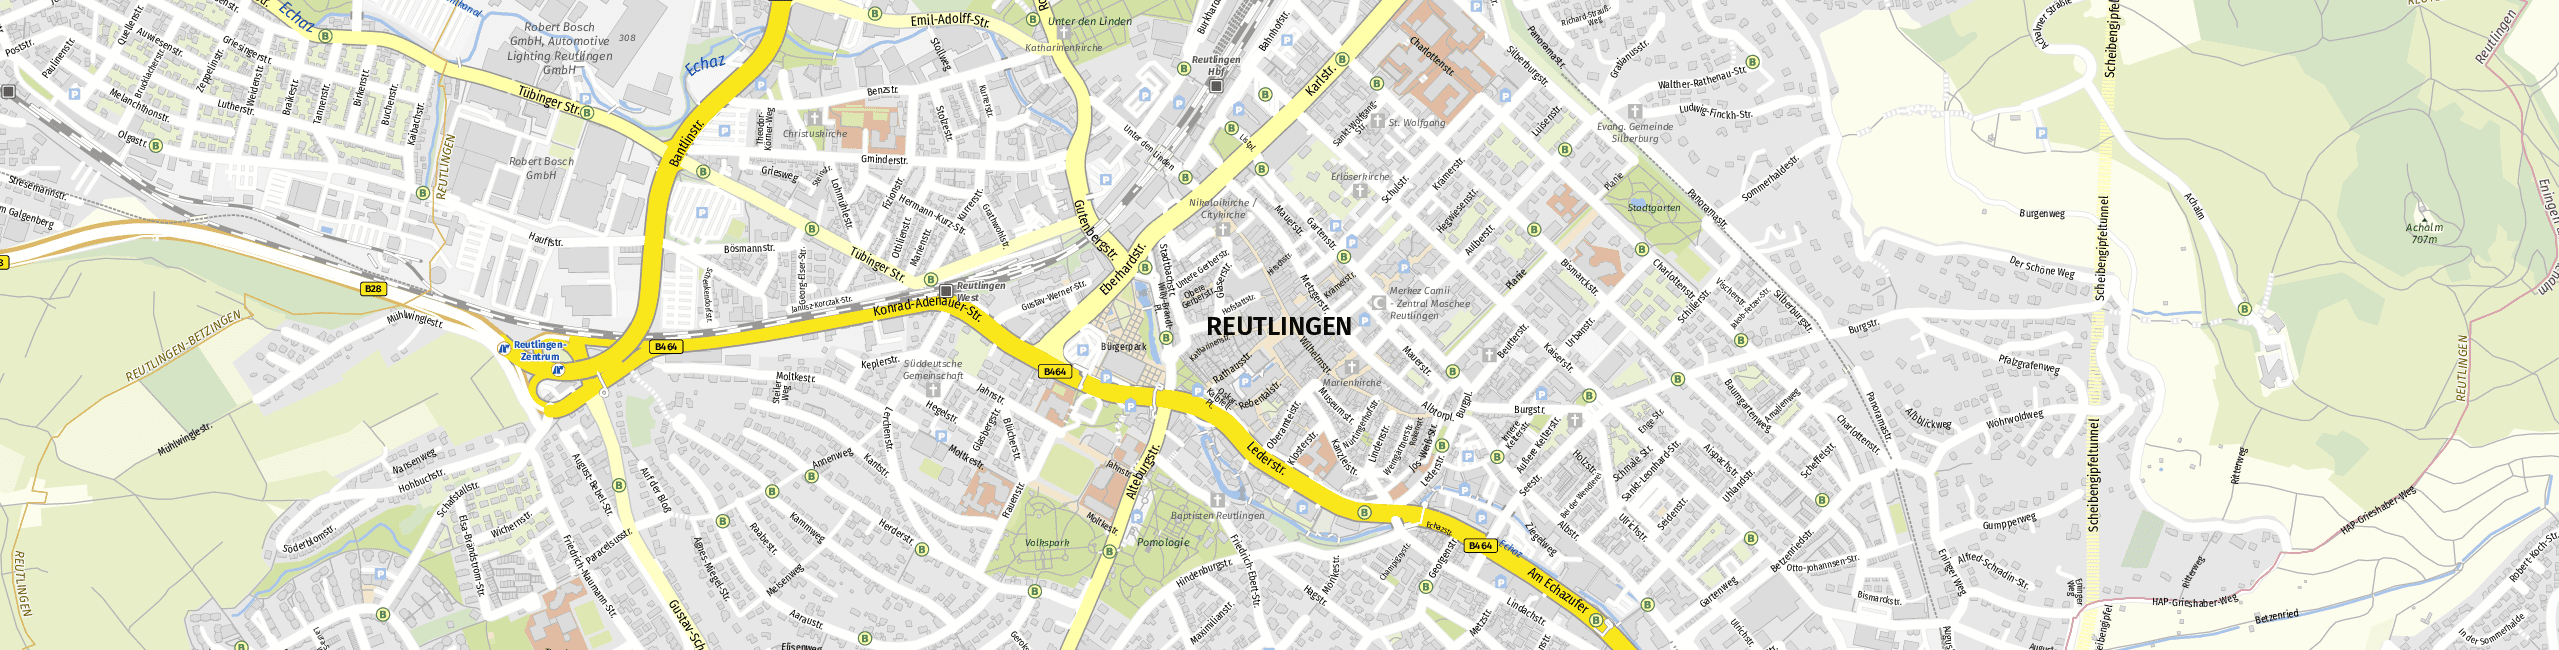 Stadtplan Reutlingen zum Downloaden.